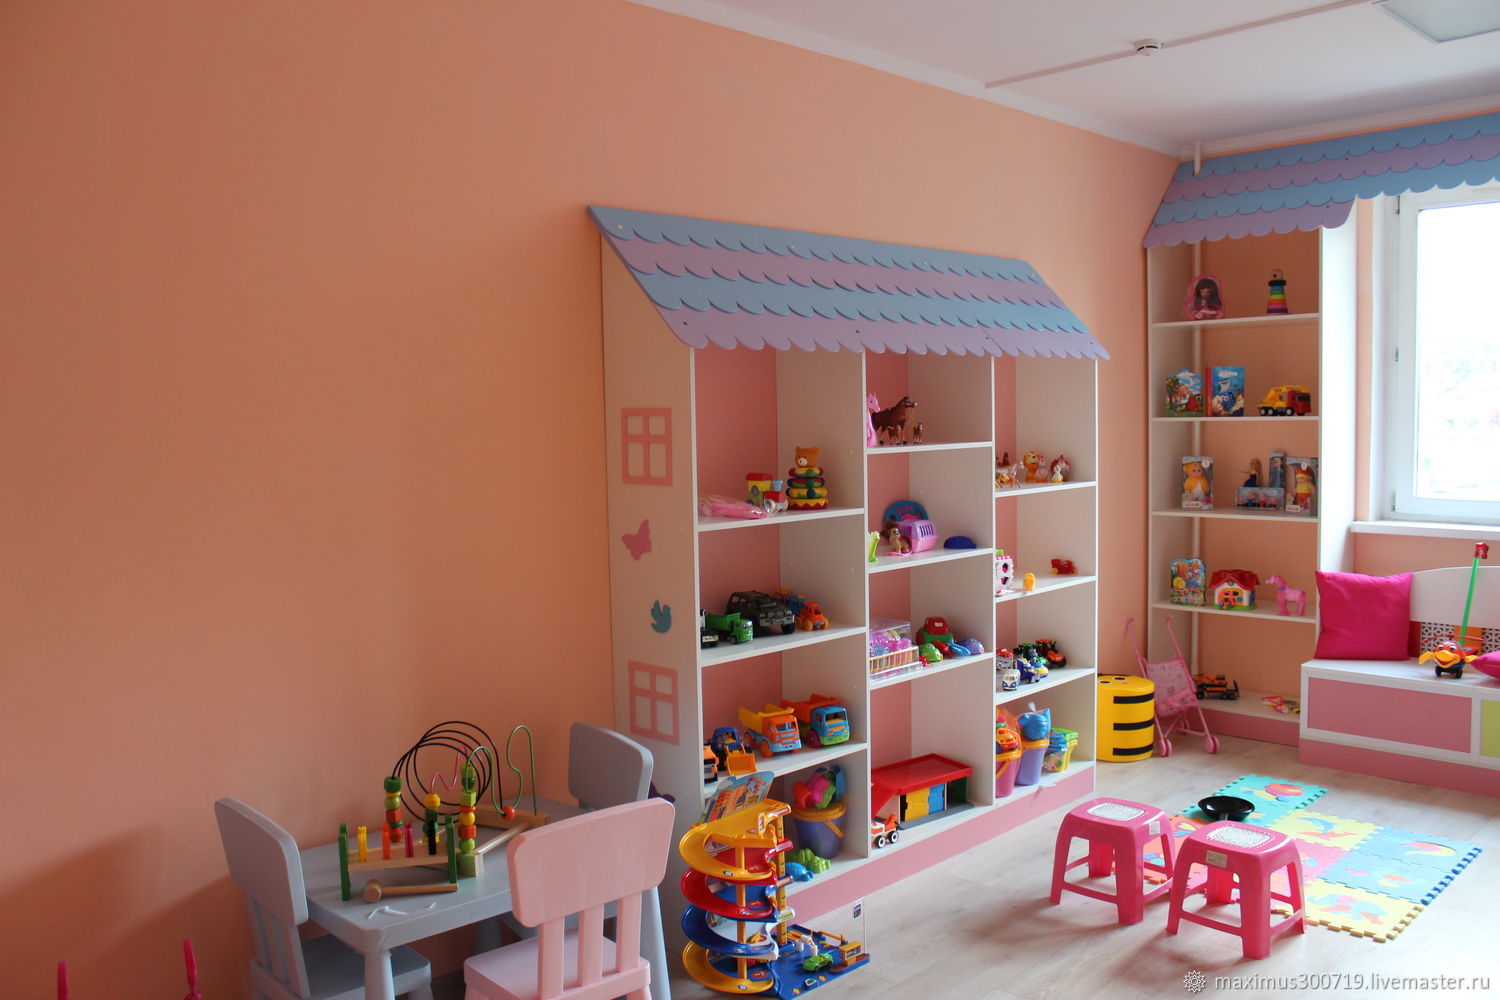 Фото детская мебель для детского сада